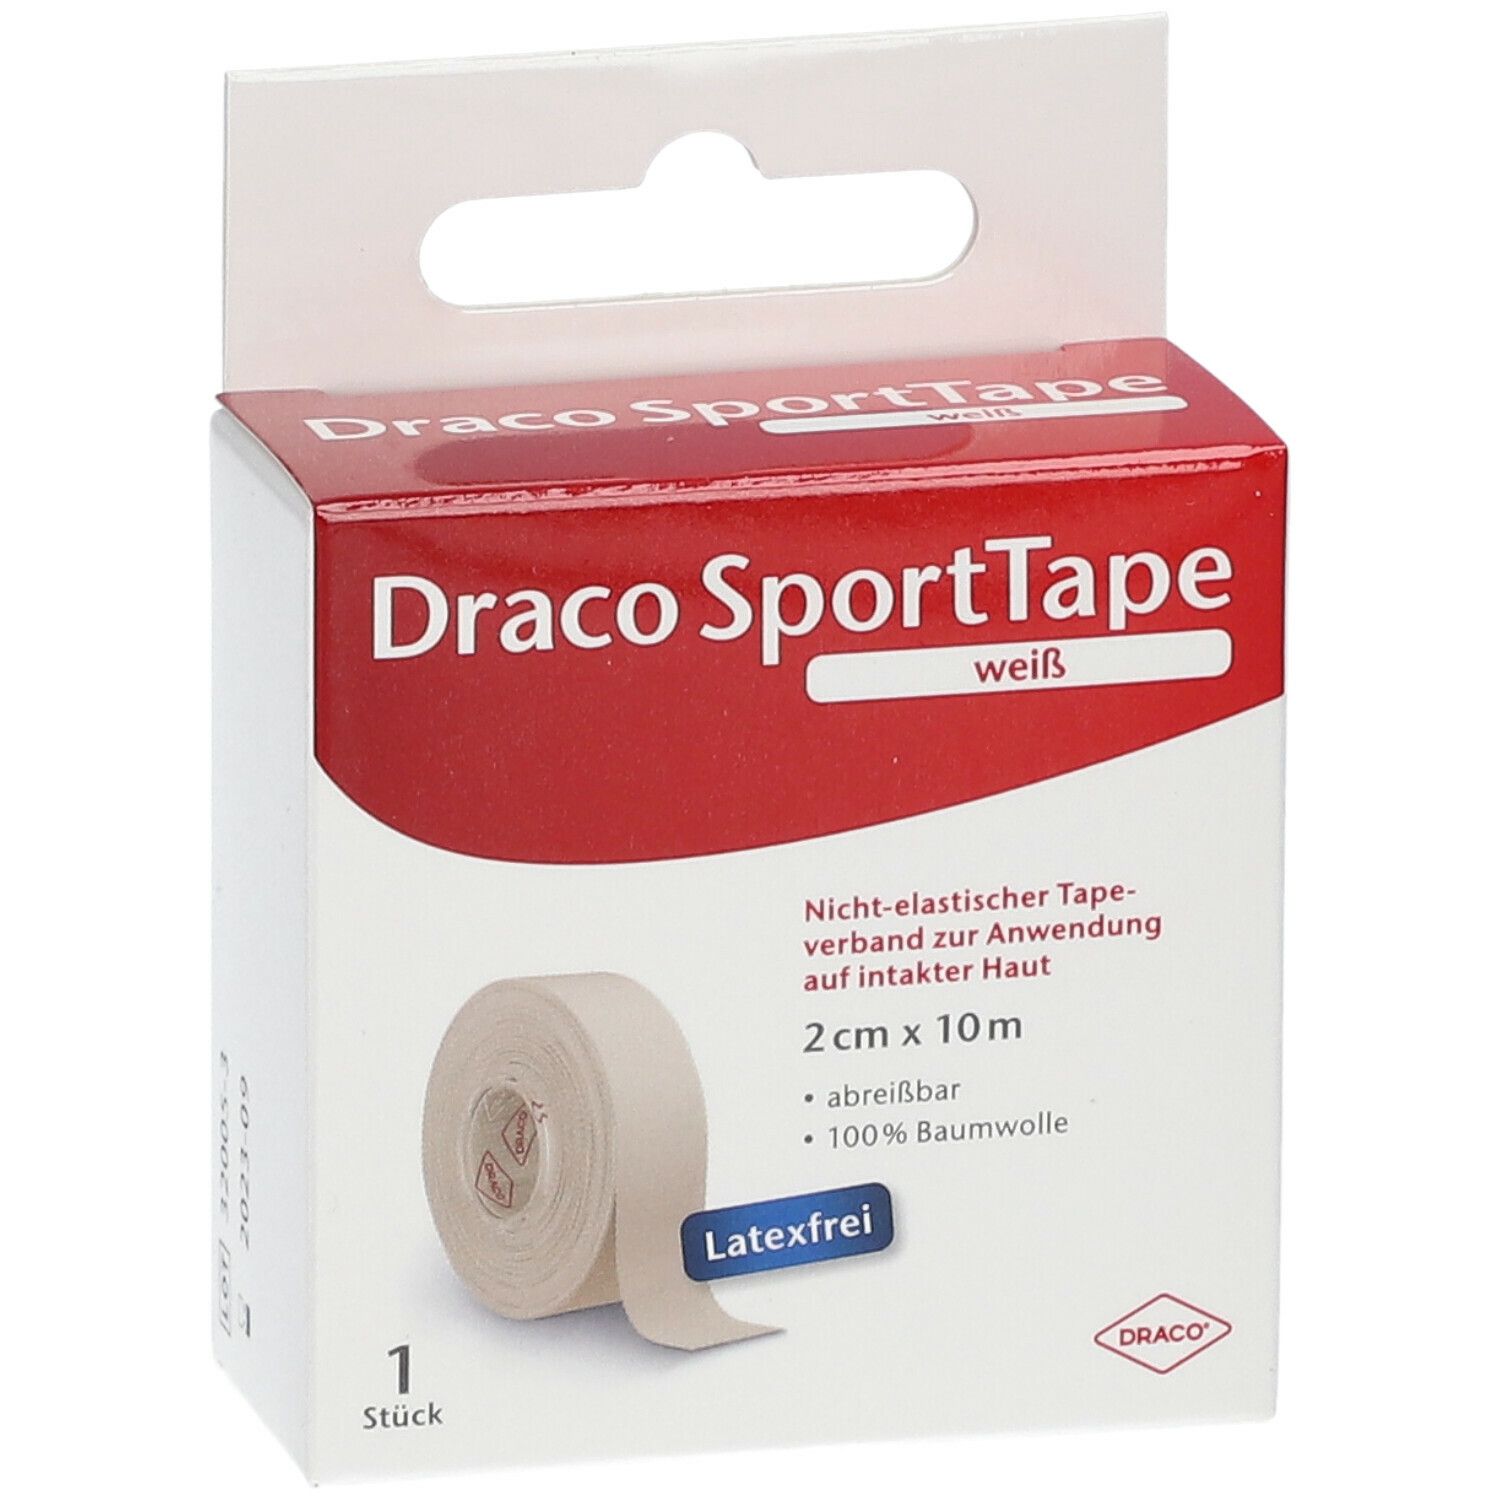 Draco SportTape 2 cm x 10 m weiß